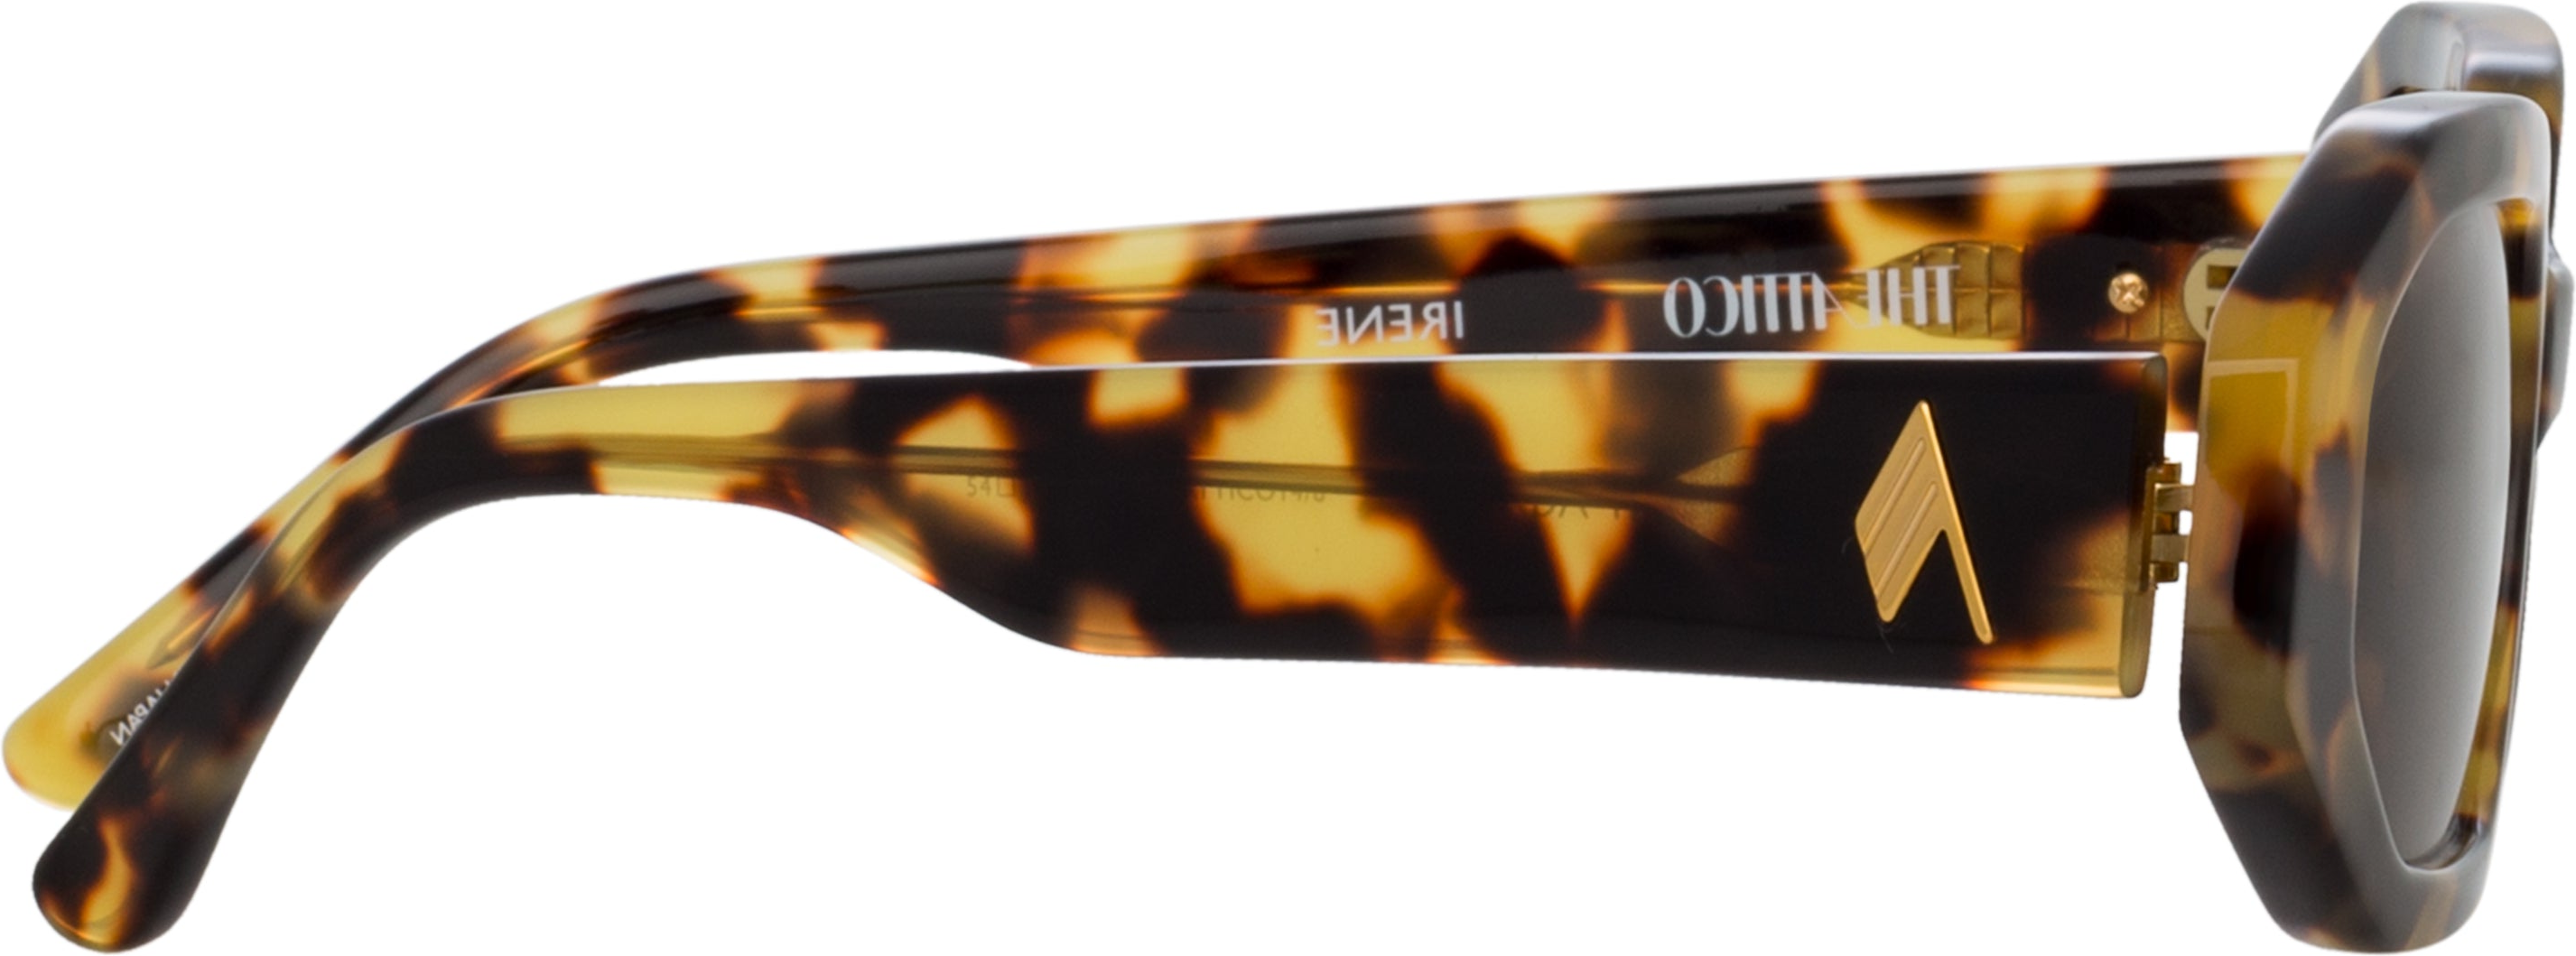 Color_ATTICO14C8SUN - The Attico Irene Angular Sunglasses in Tortoiseshell and Brown